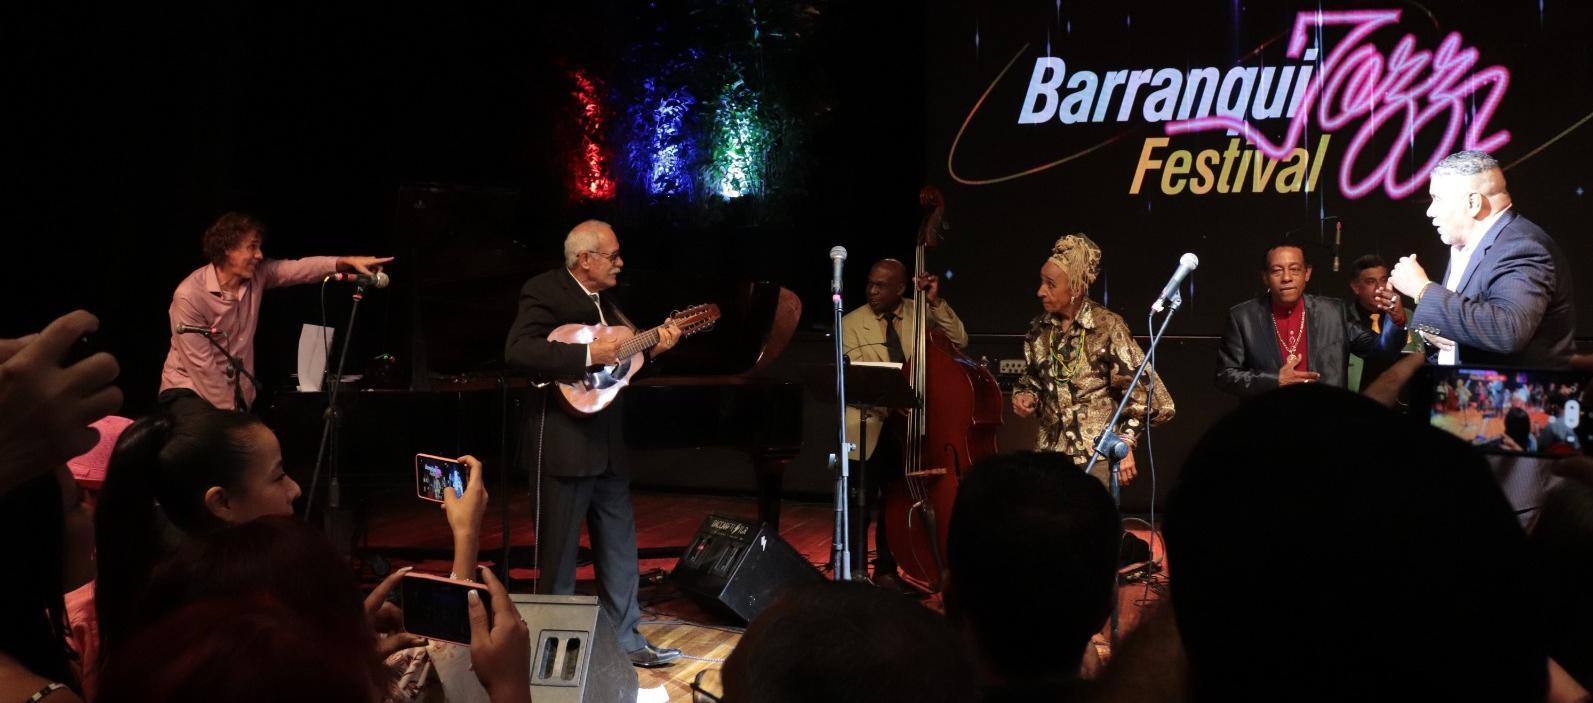 Barranquijazz Festival se realizará en septiembre.